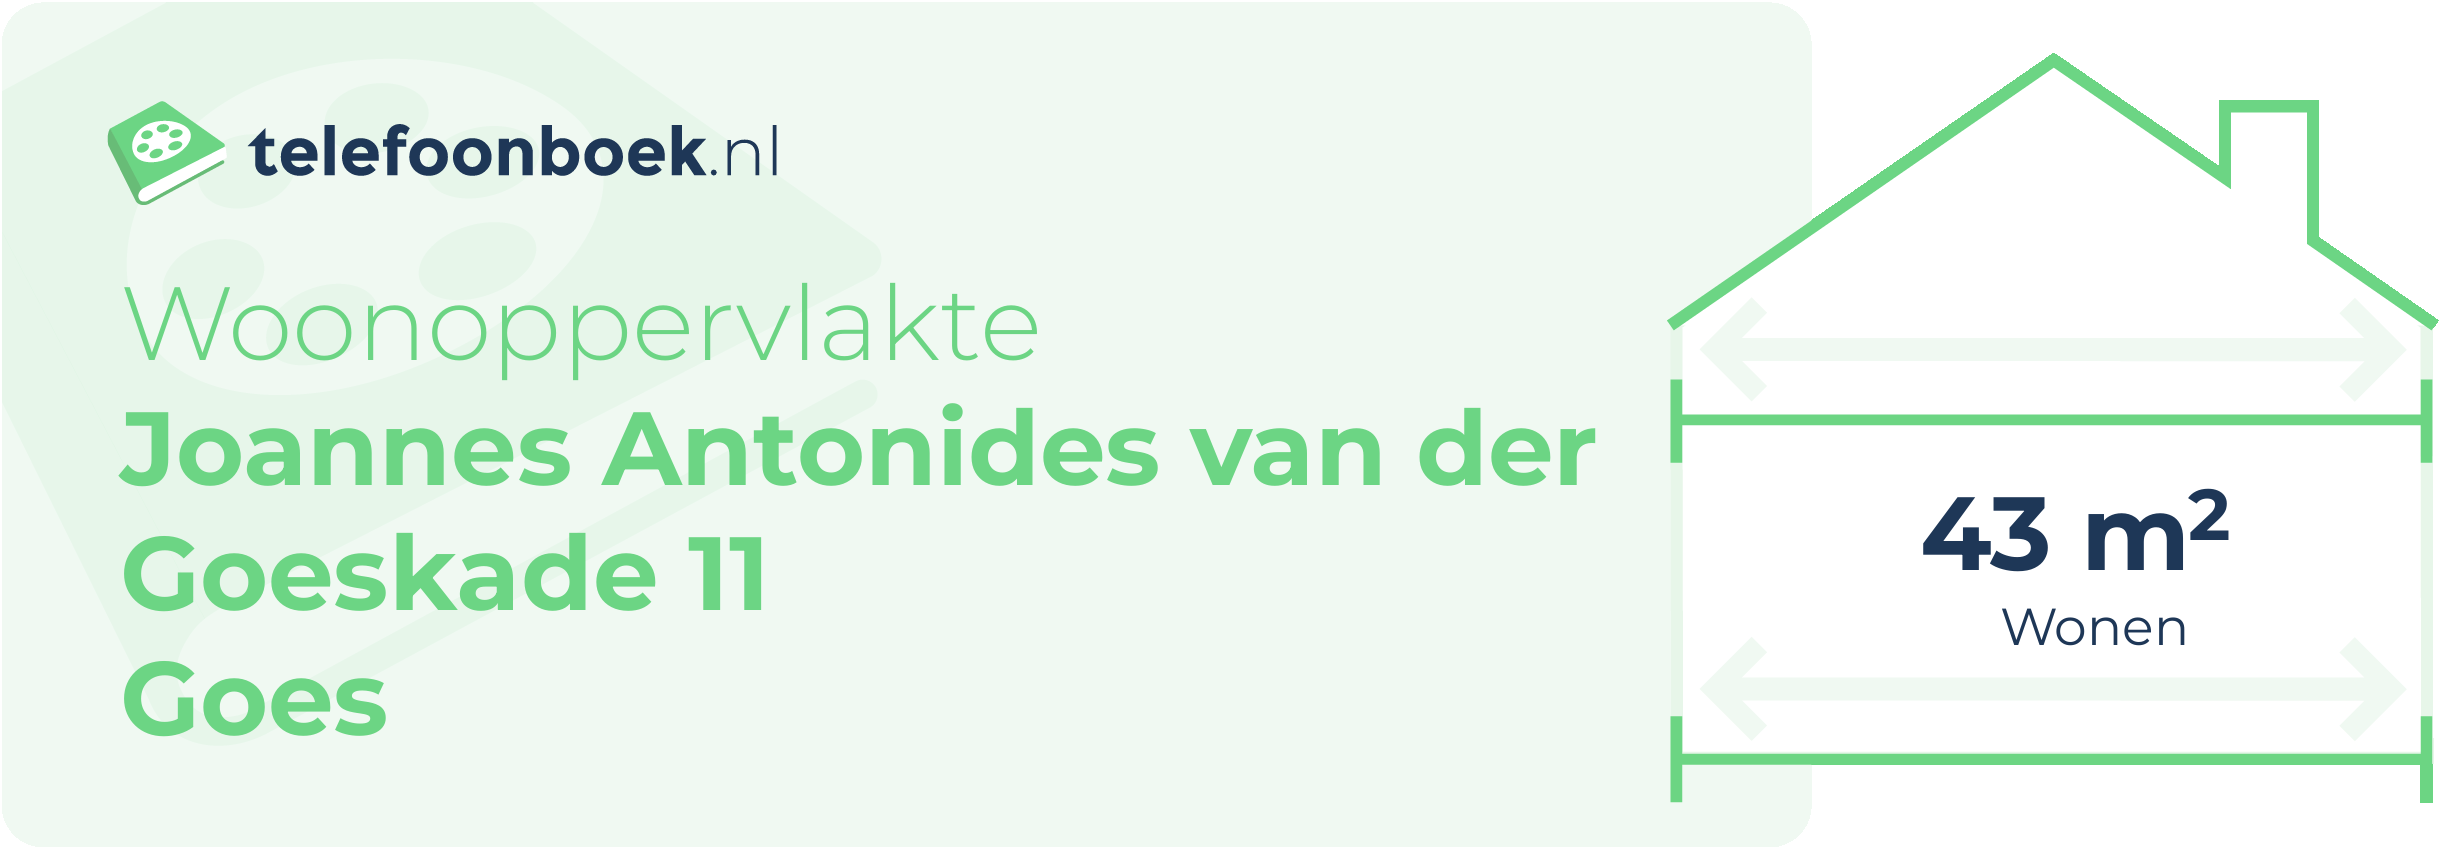 Woonoppervlakte Joannes Antonides Van Der Goeskade 11 Goes